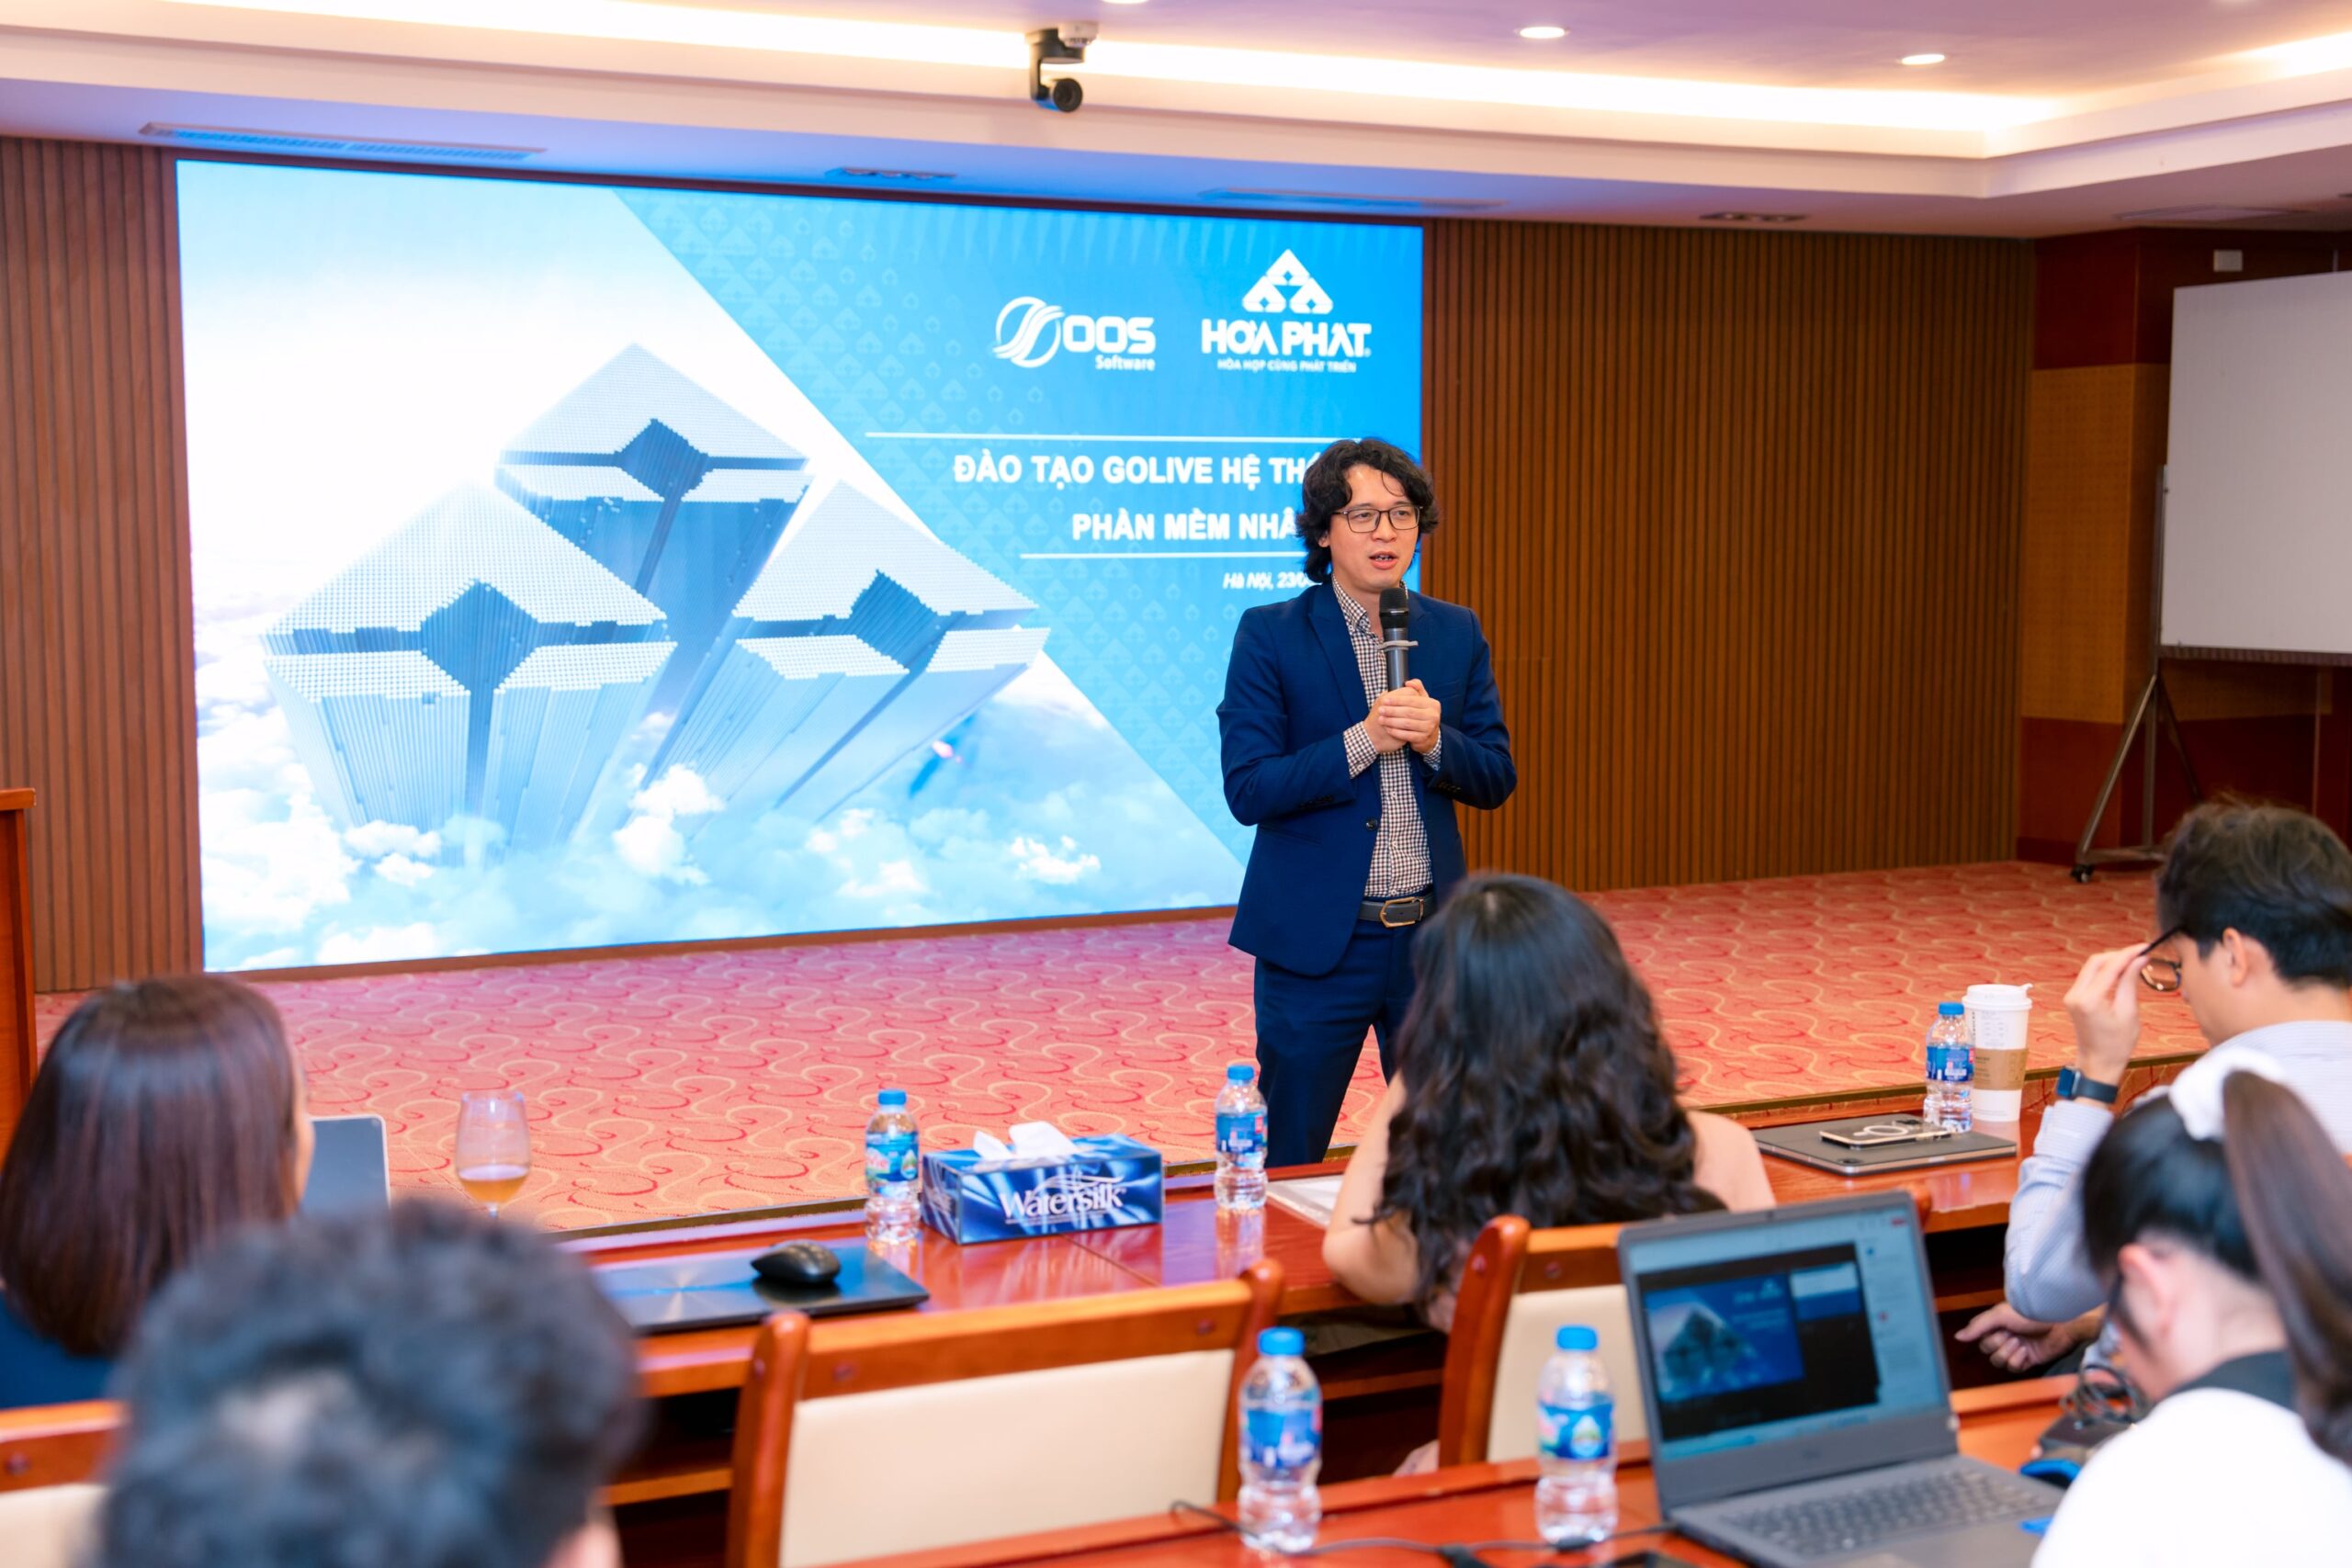 Anh Phạm Ngọc Thức, đại diện OOS Software chia sẻ tại buổi lễ Go-live dự án